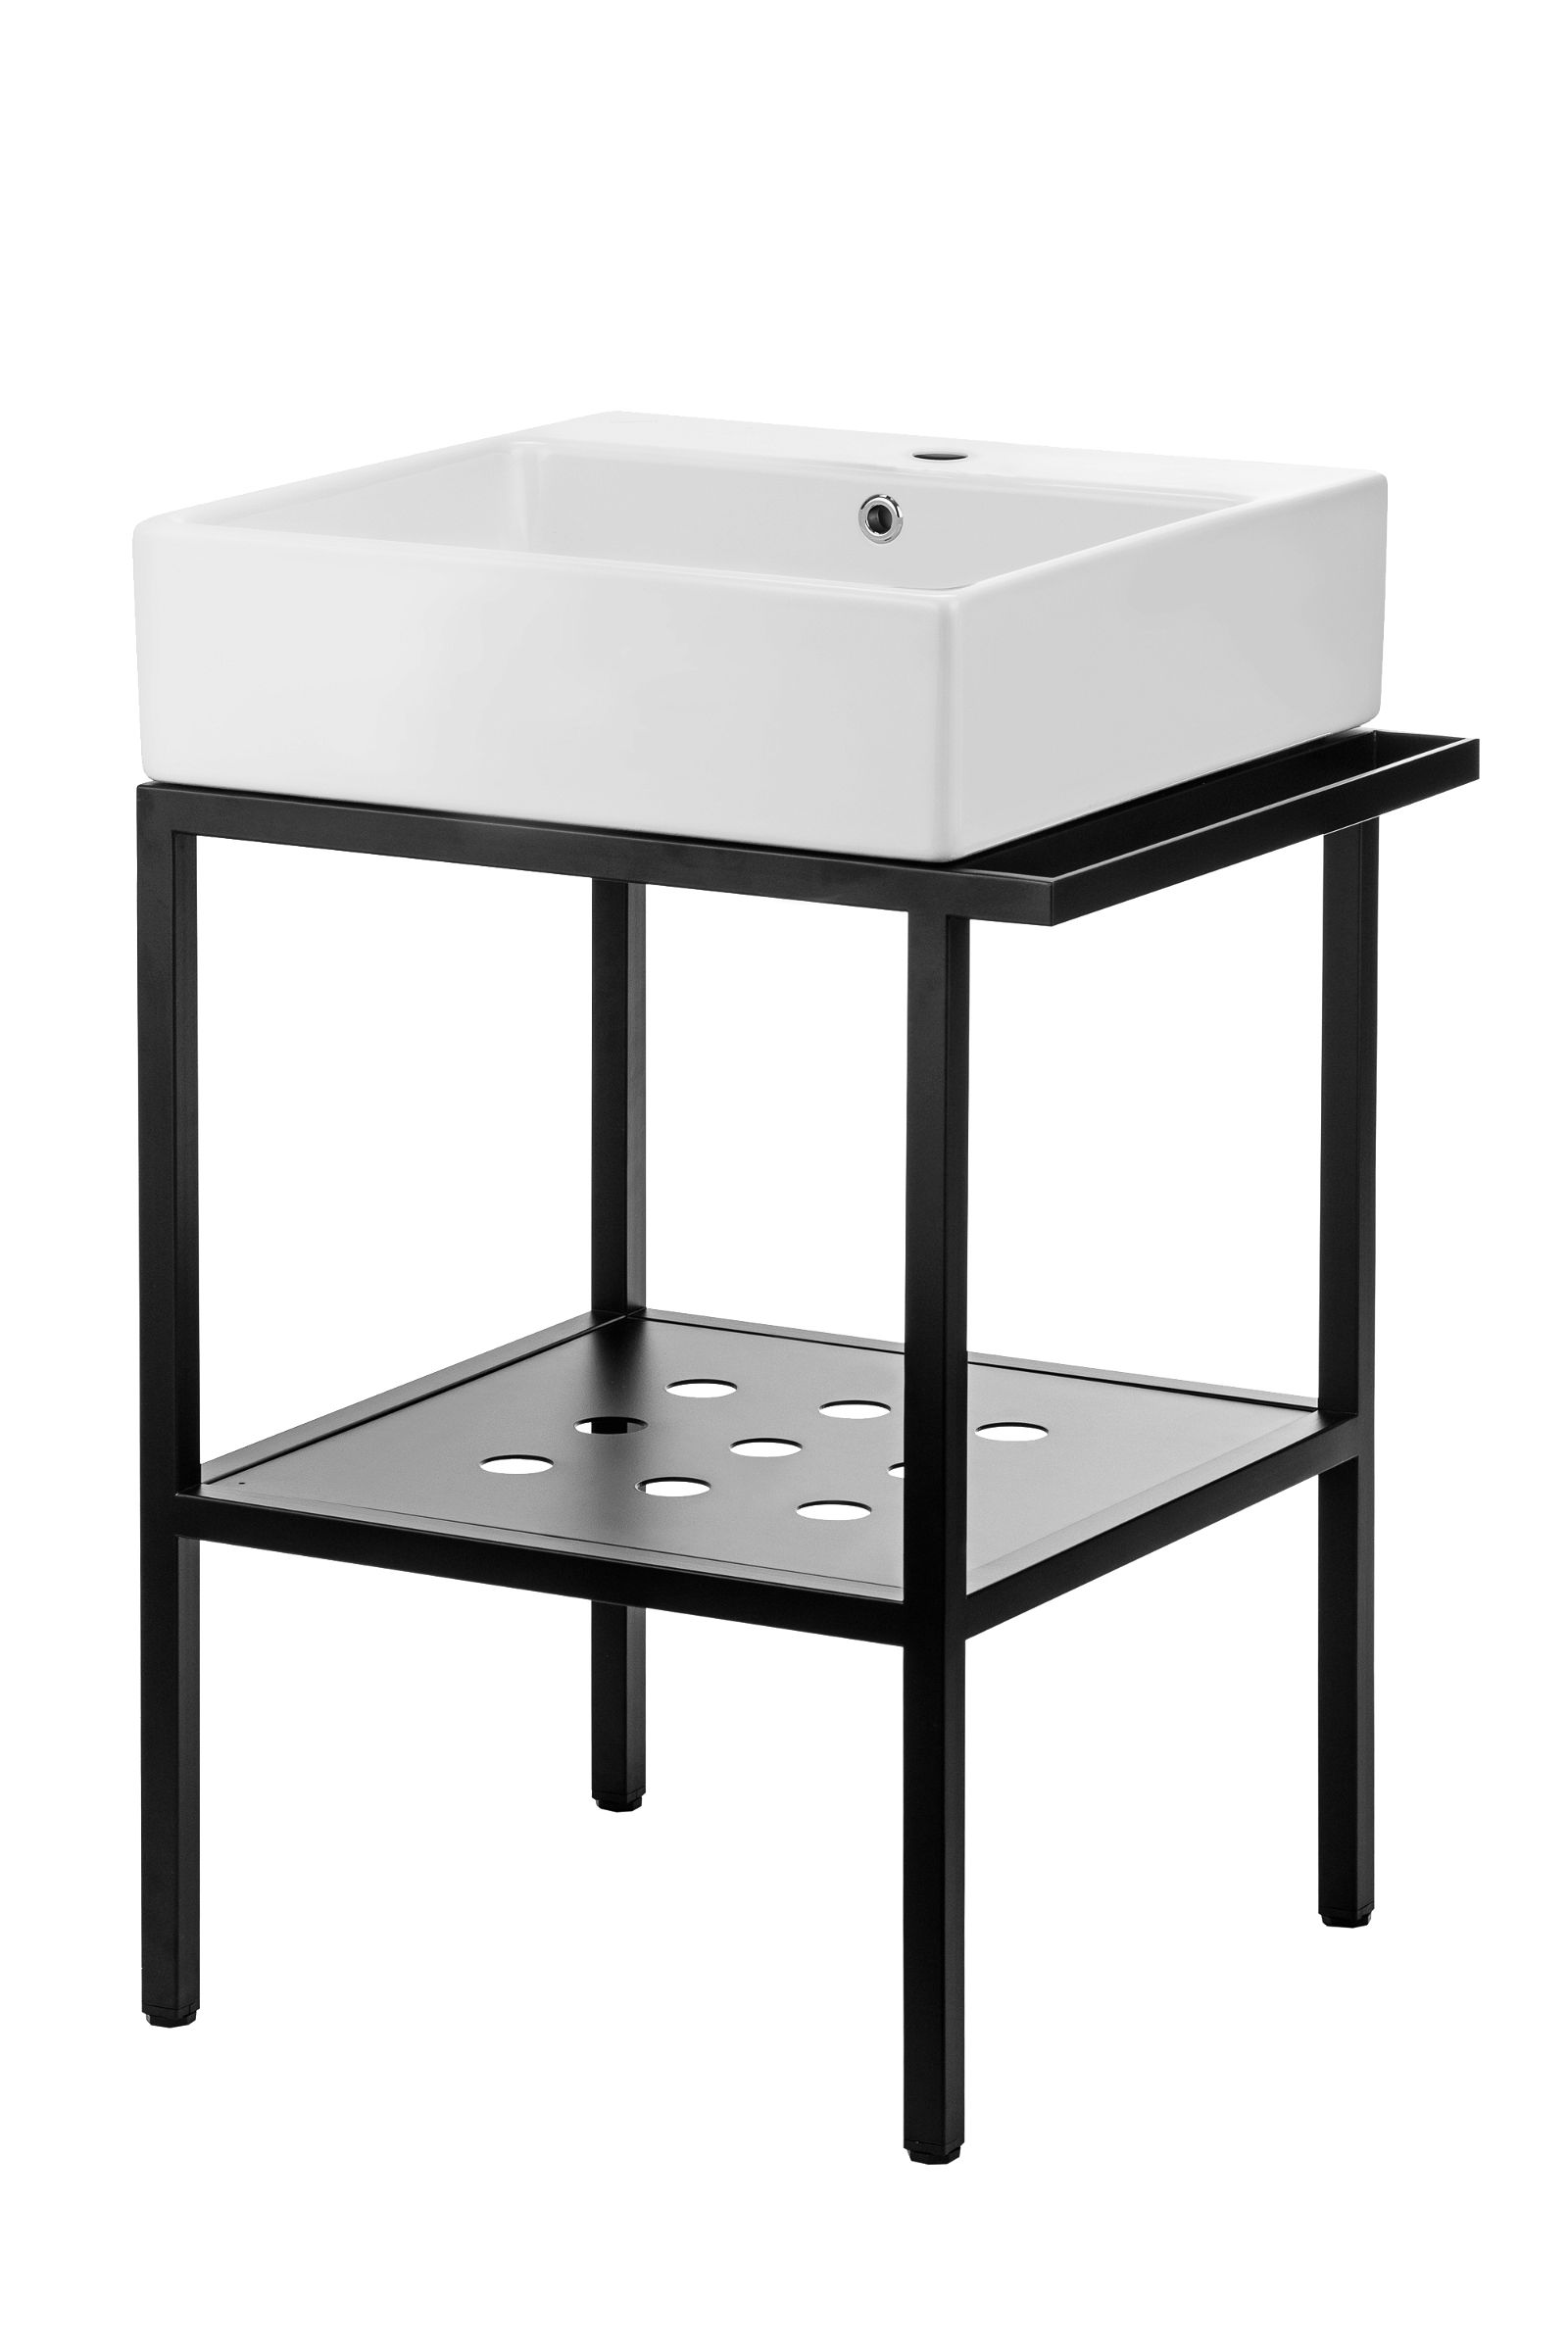 Standing bathroom console, with washbasin - 56.5x50 cm - CDTS6U5S - Główne zdjęcie produktowe